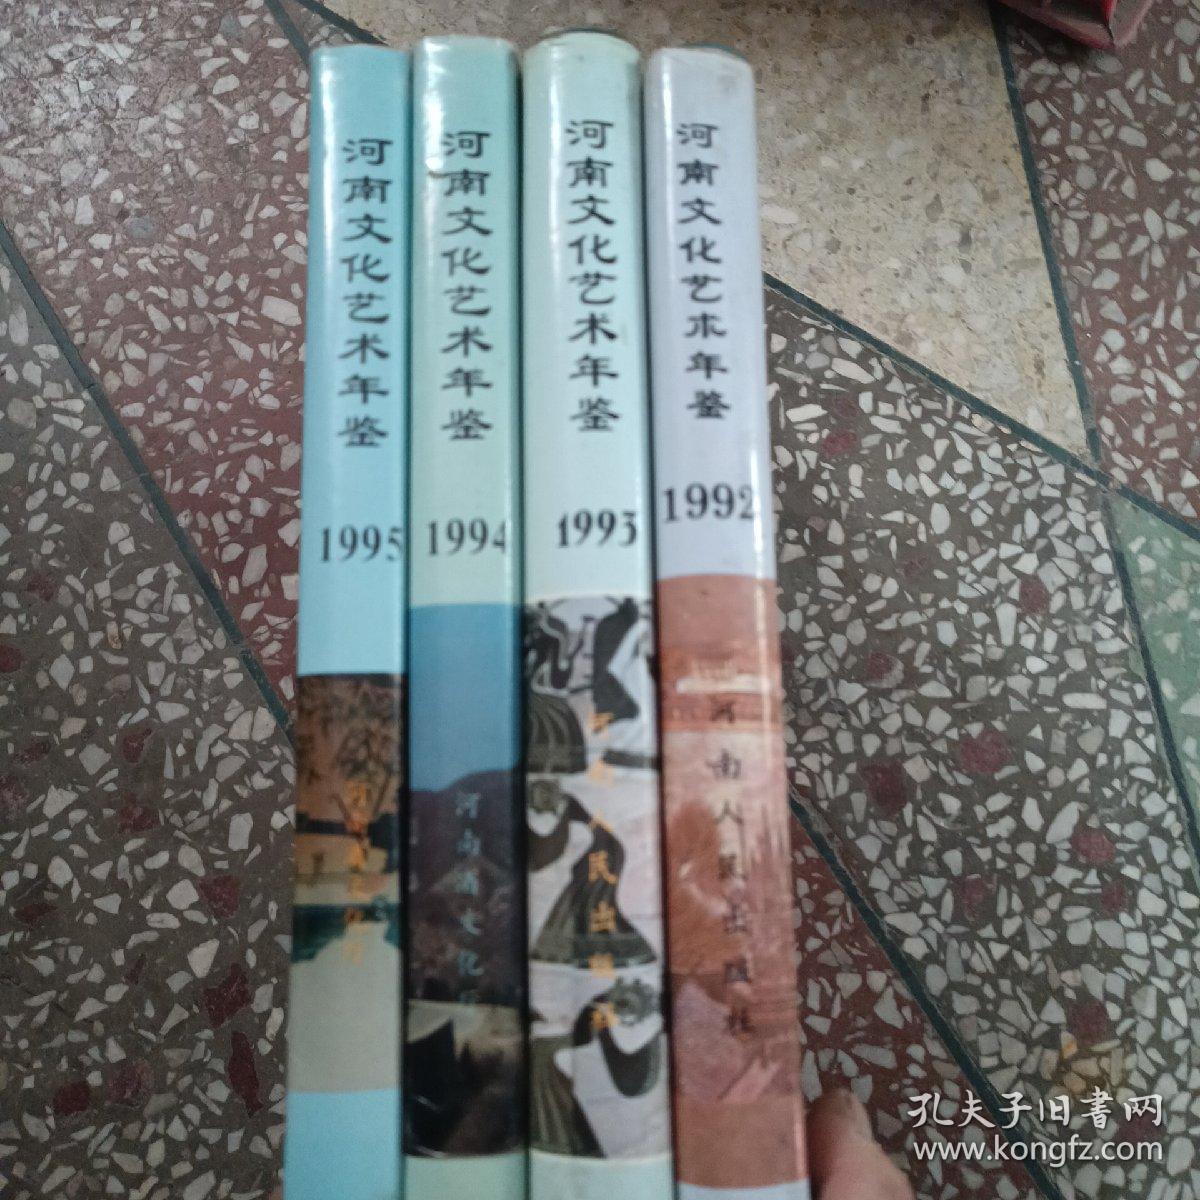 河南文化艺术年鉴1992.1993、1994、1995年 4本合售